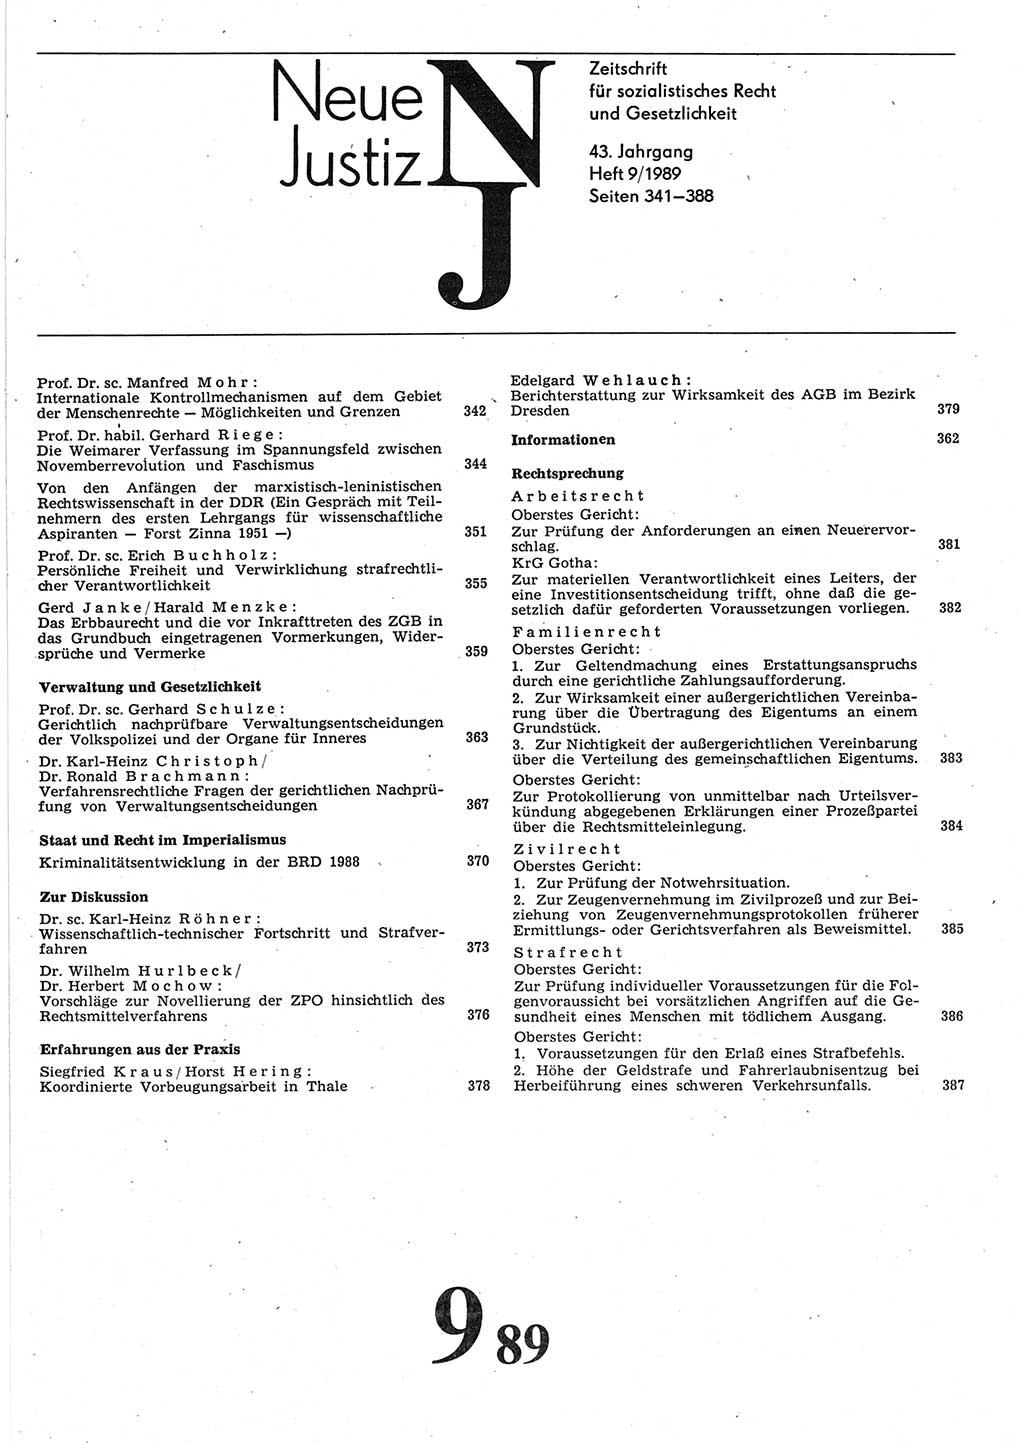 Neue Justiz (NJ), Zeitschrift für sozialistisches Recht und Gesetzlichkeit [Deutsche Demokratische Republik (DDR)], 43. Jahrgang 1989, Seite 341 (NJ DDR 1989, S. 341)